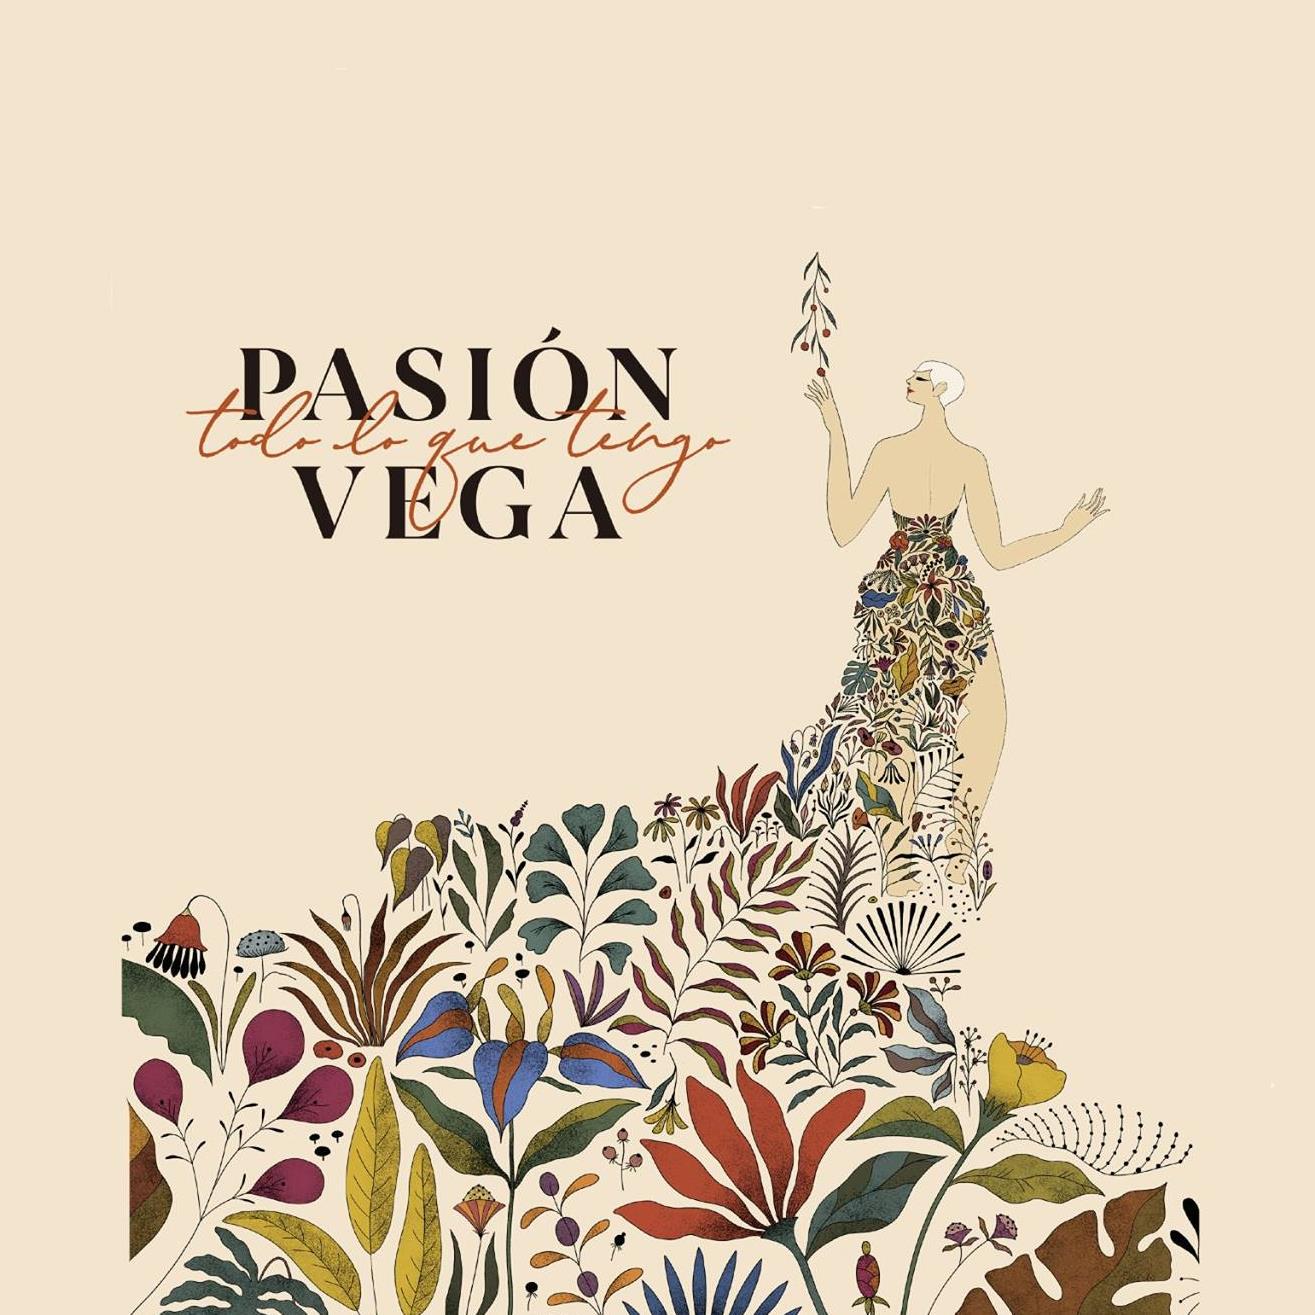 Pasion Vega